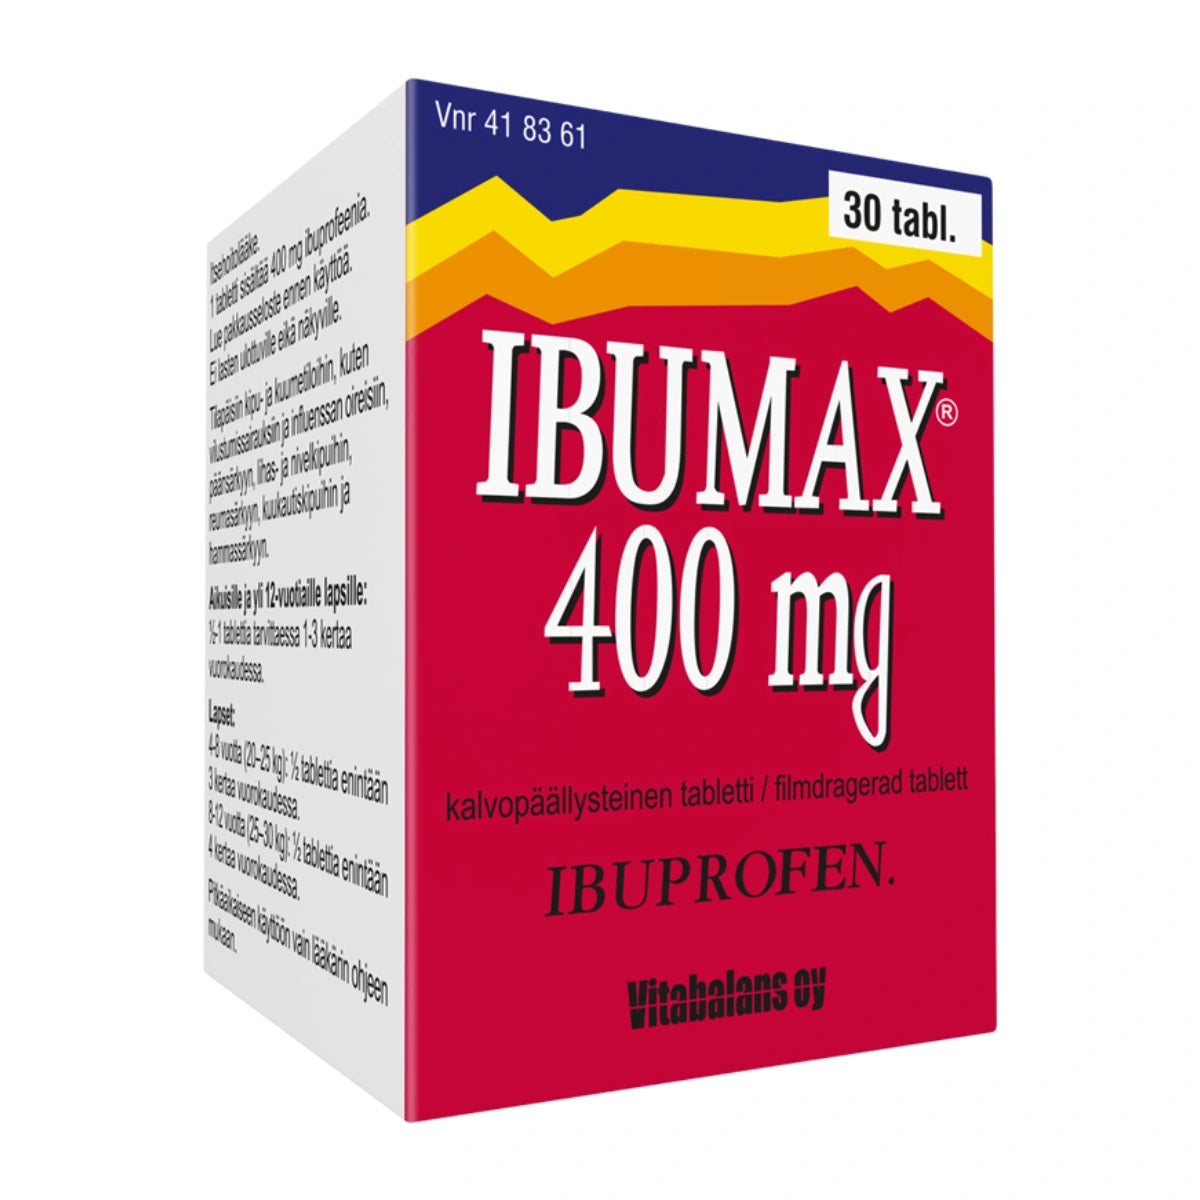 IBUMAX 400 mg tabletti, kalvopäällysteinen 30 kpl purkki